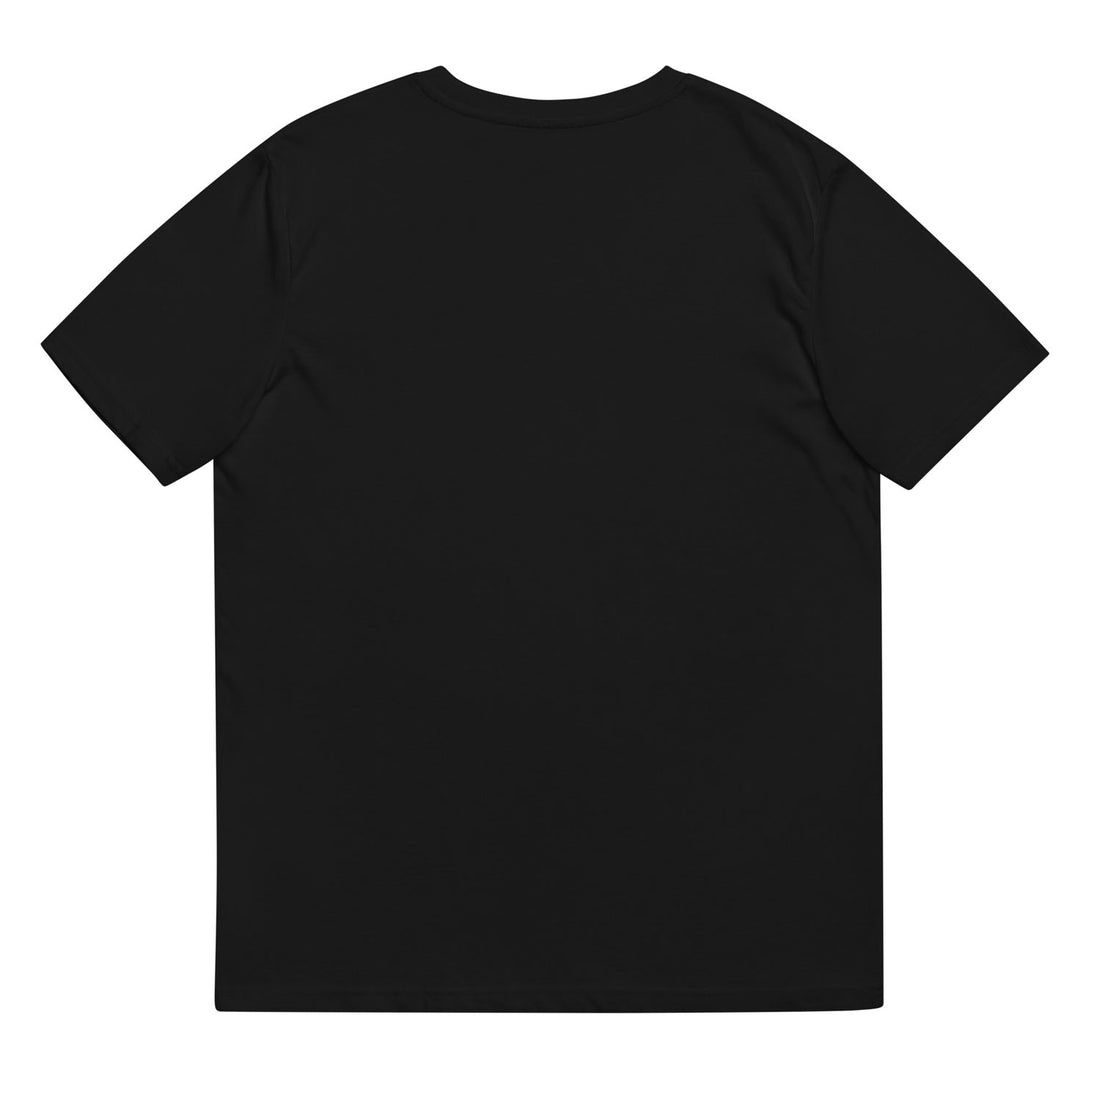 uniswap logo tshirt black